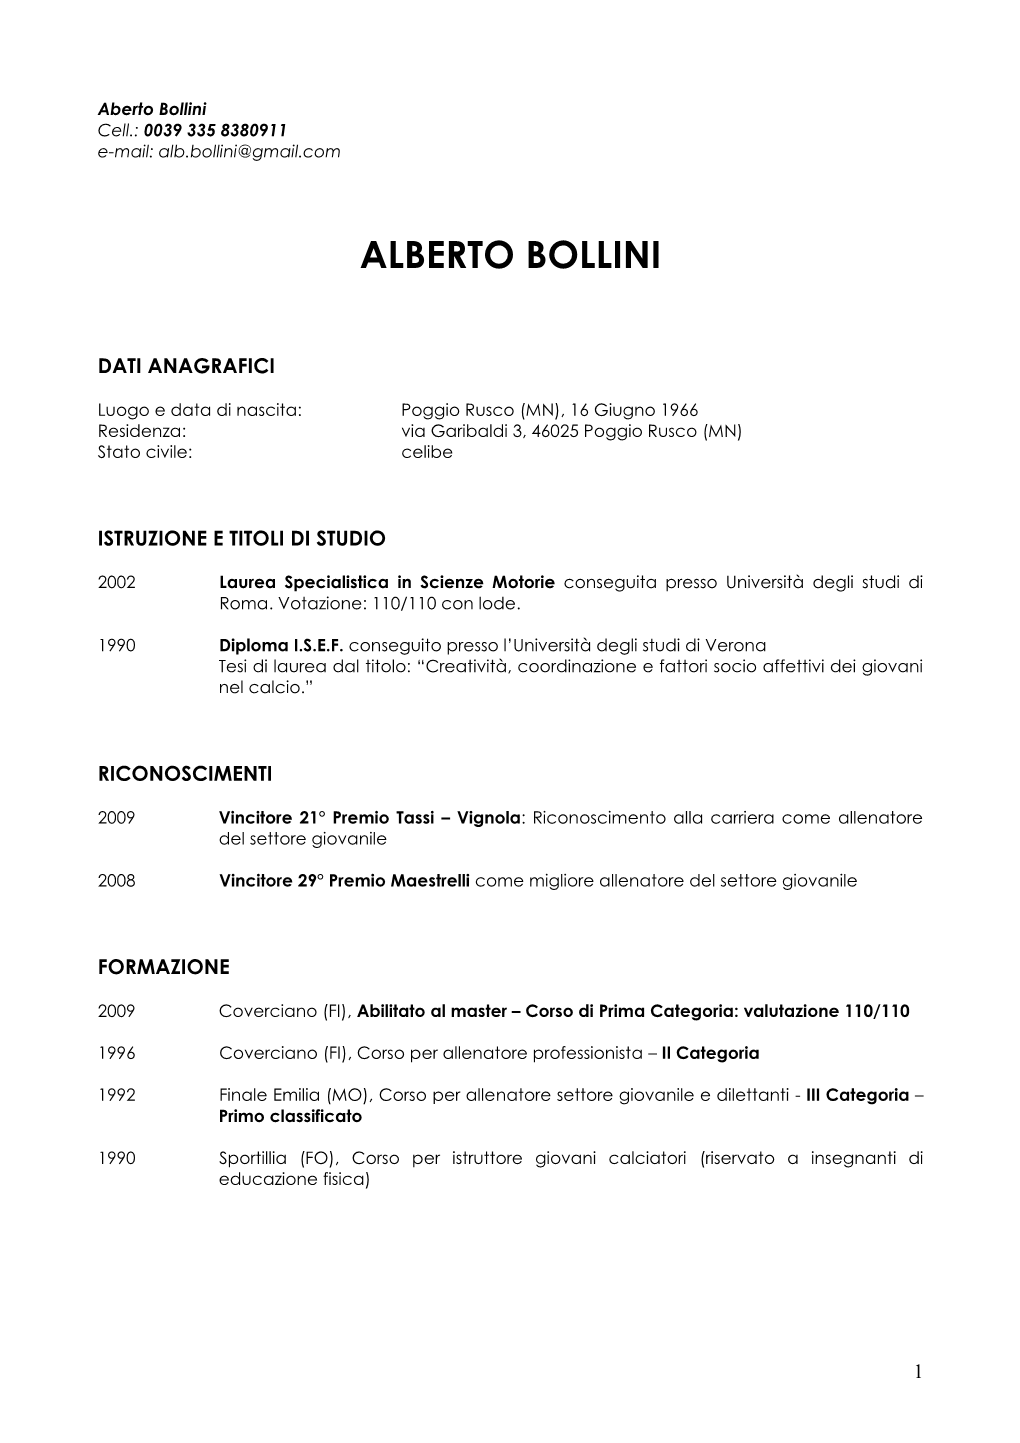 Aberto Bollini Cell.: 0039 335 8380911 E-Mail: Alb.Bollini@Gmail.Com